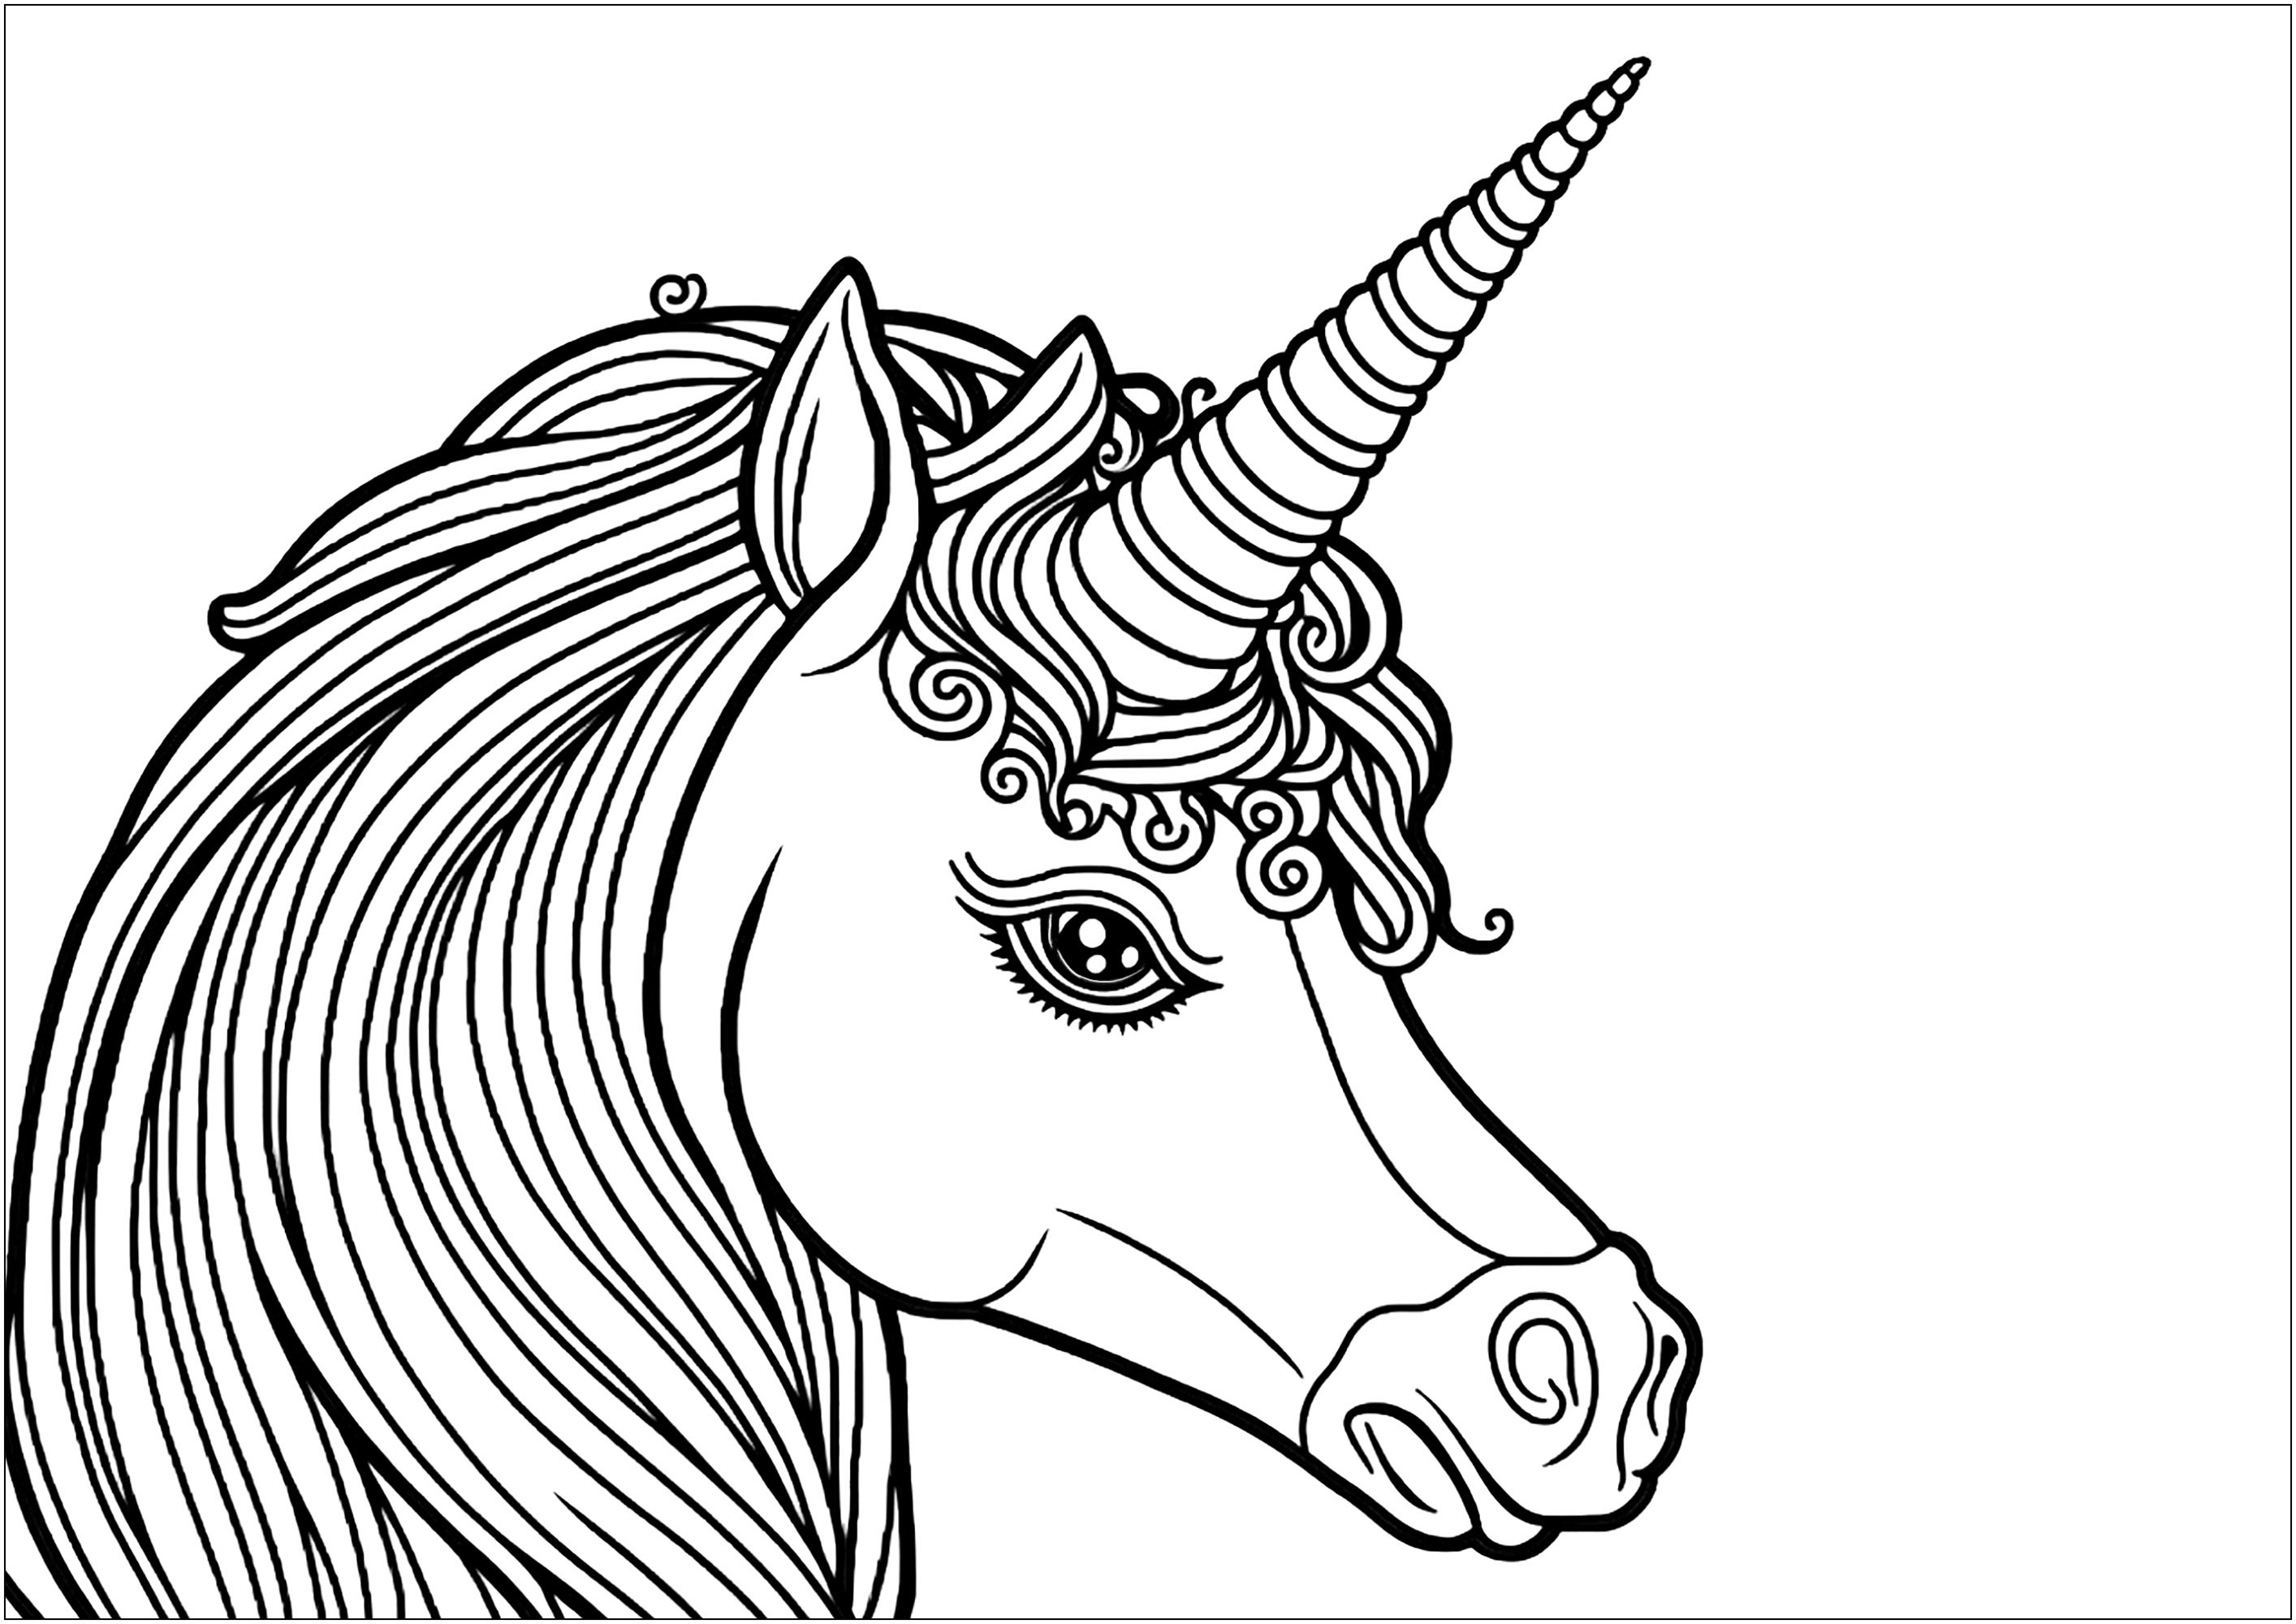 A pretty unicorn seen in profile, on a white background